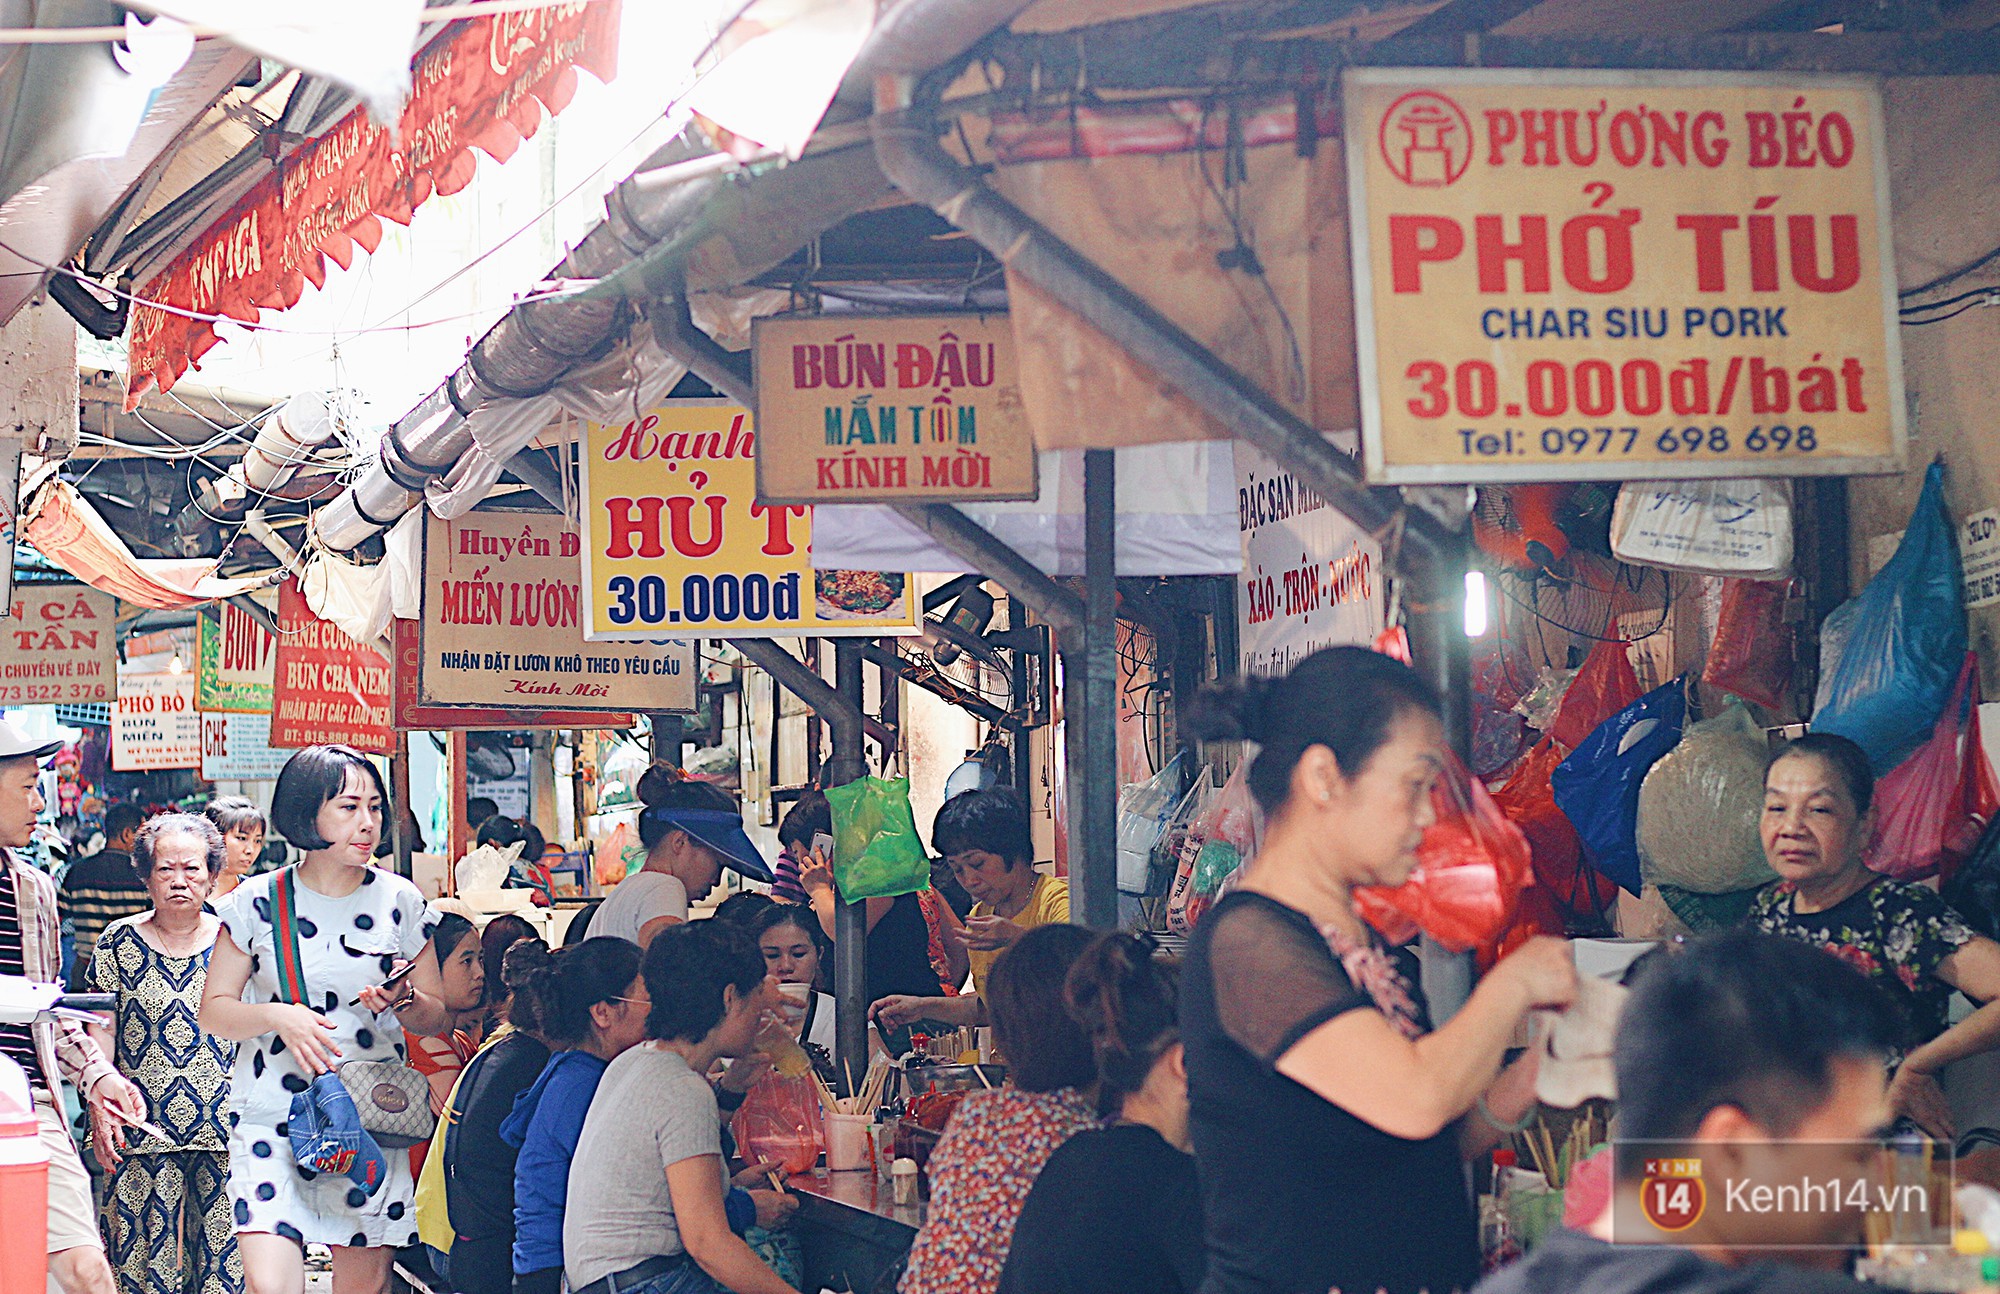 5 khu chợ ăn vặt nức lòng giới trẻ Hà Nội, chỉ cần nghe tên cũng liệt kê ra được đủ món đặc trưng - Ảnh 4.